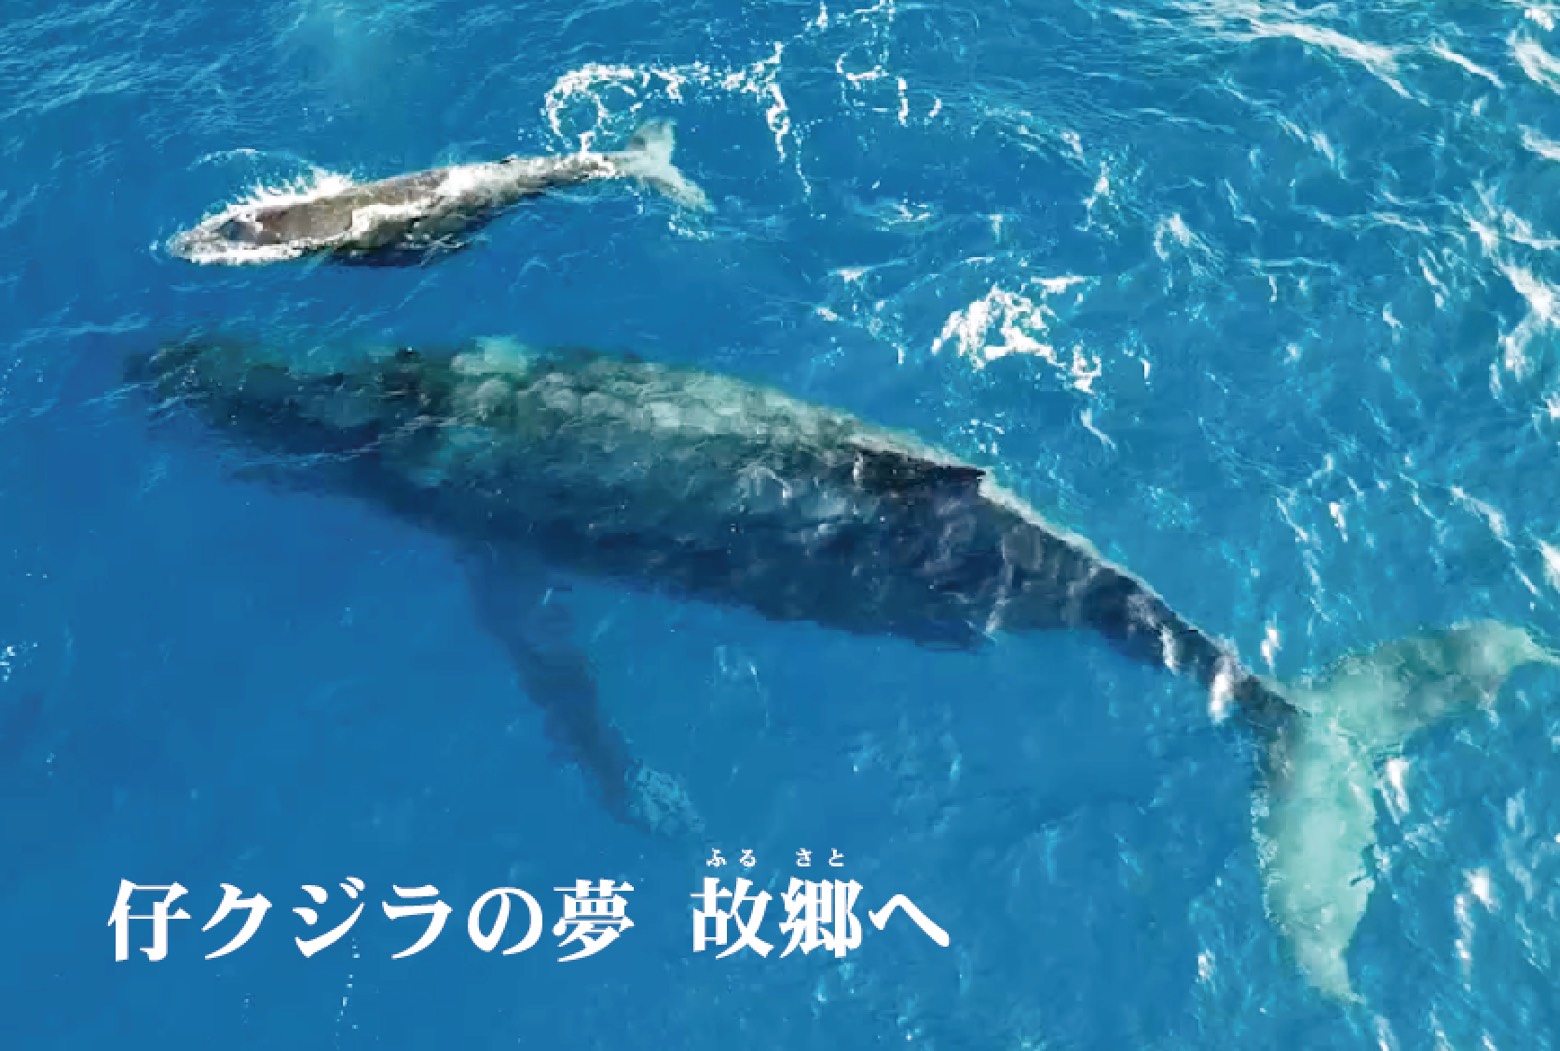 仔クジラの夢故郷 ふるさと へ ザトウクジラの骨格標本を沖縄県ケラマ諸島の座間味島に展示したい 株式会社アドバンスシフトのプレスリリース